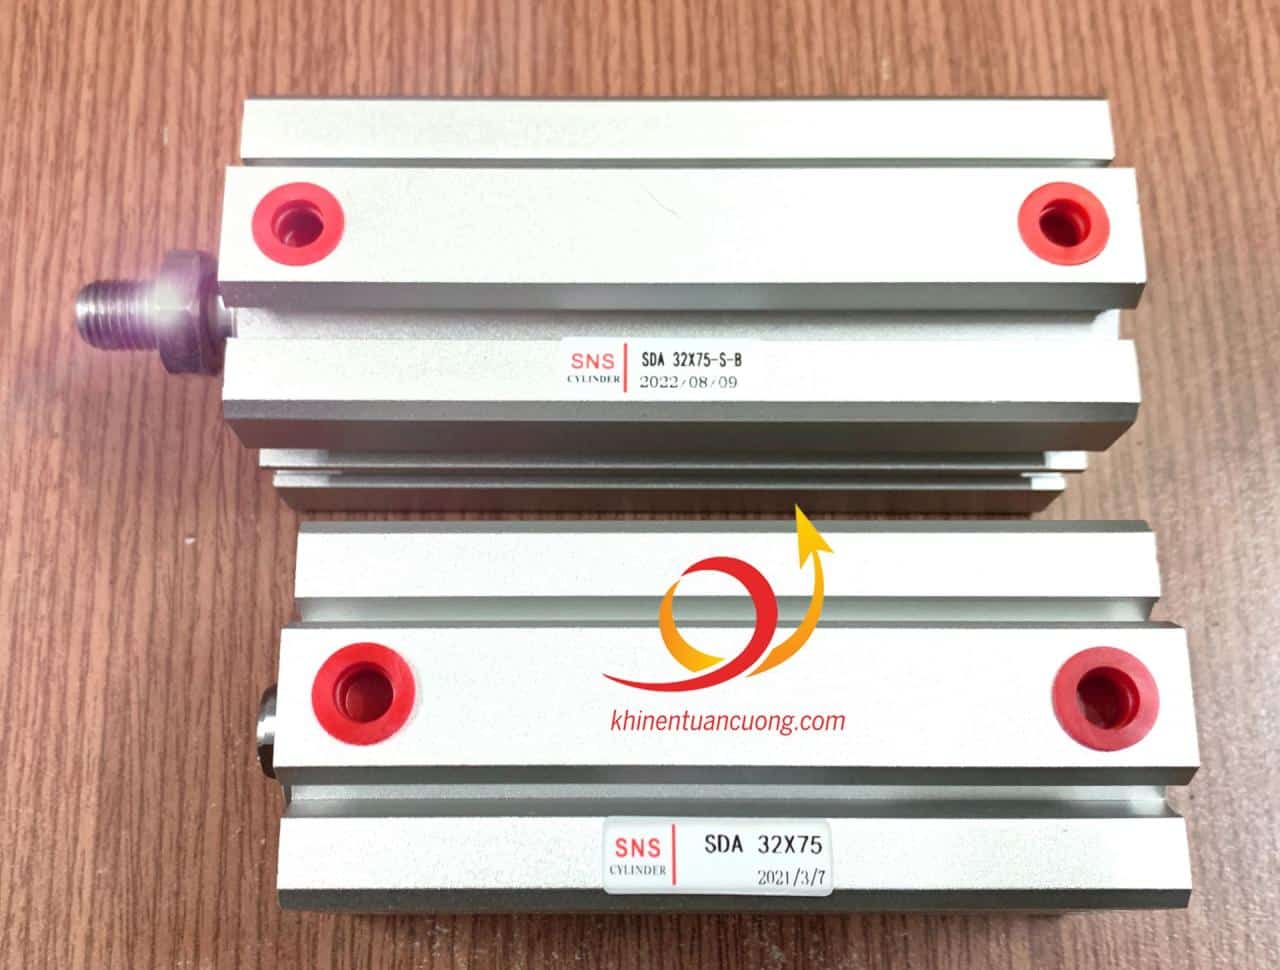 Đặt cạnh 1 cây SDA32x75 ren trong standard (cơ bản) chúng ta sẽ thấy cây SDA32x75-S-B có phần thân dài hơn 10mm tương đương 1cm